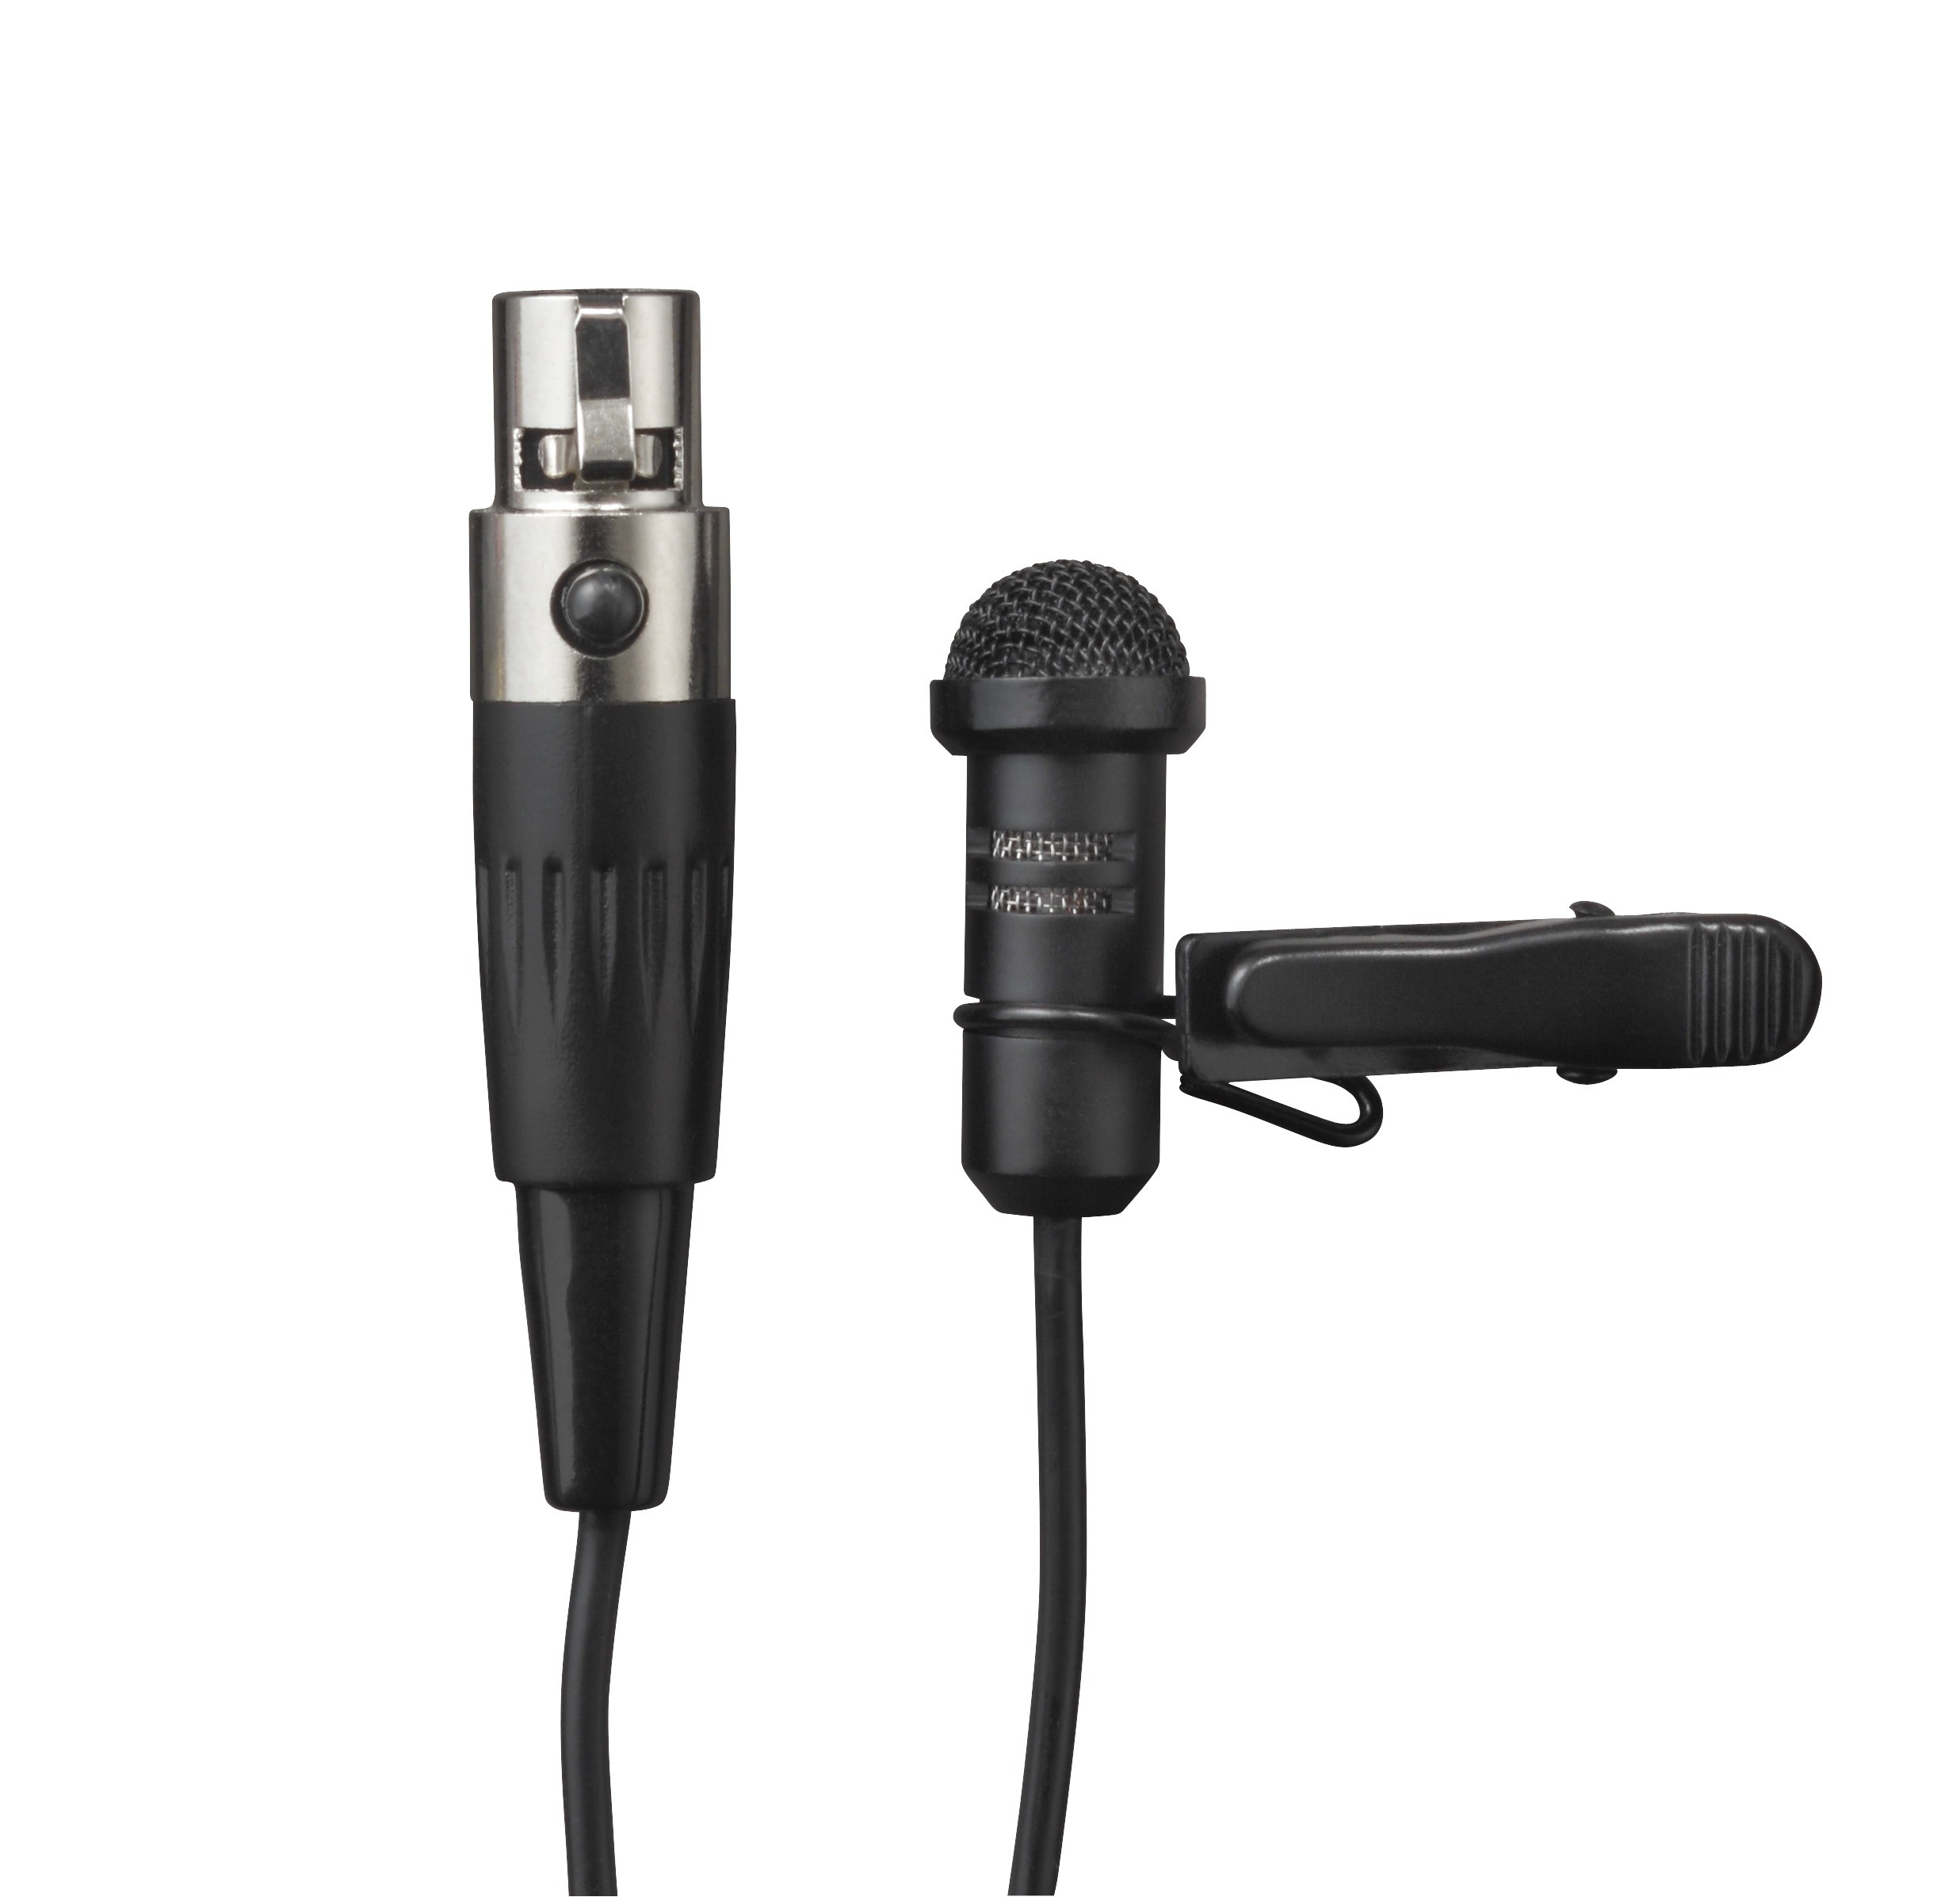 Electro-Voice R300-L Поясная система с кардиоидным петличным микрофоном ULM18 (вкл. приёмник R300) купить в prostore.me